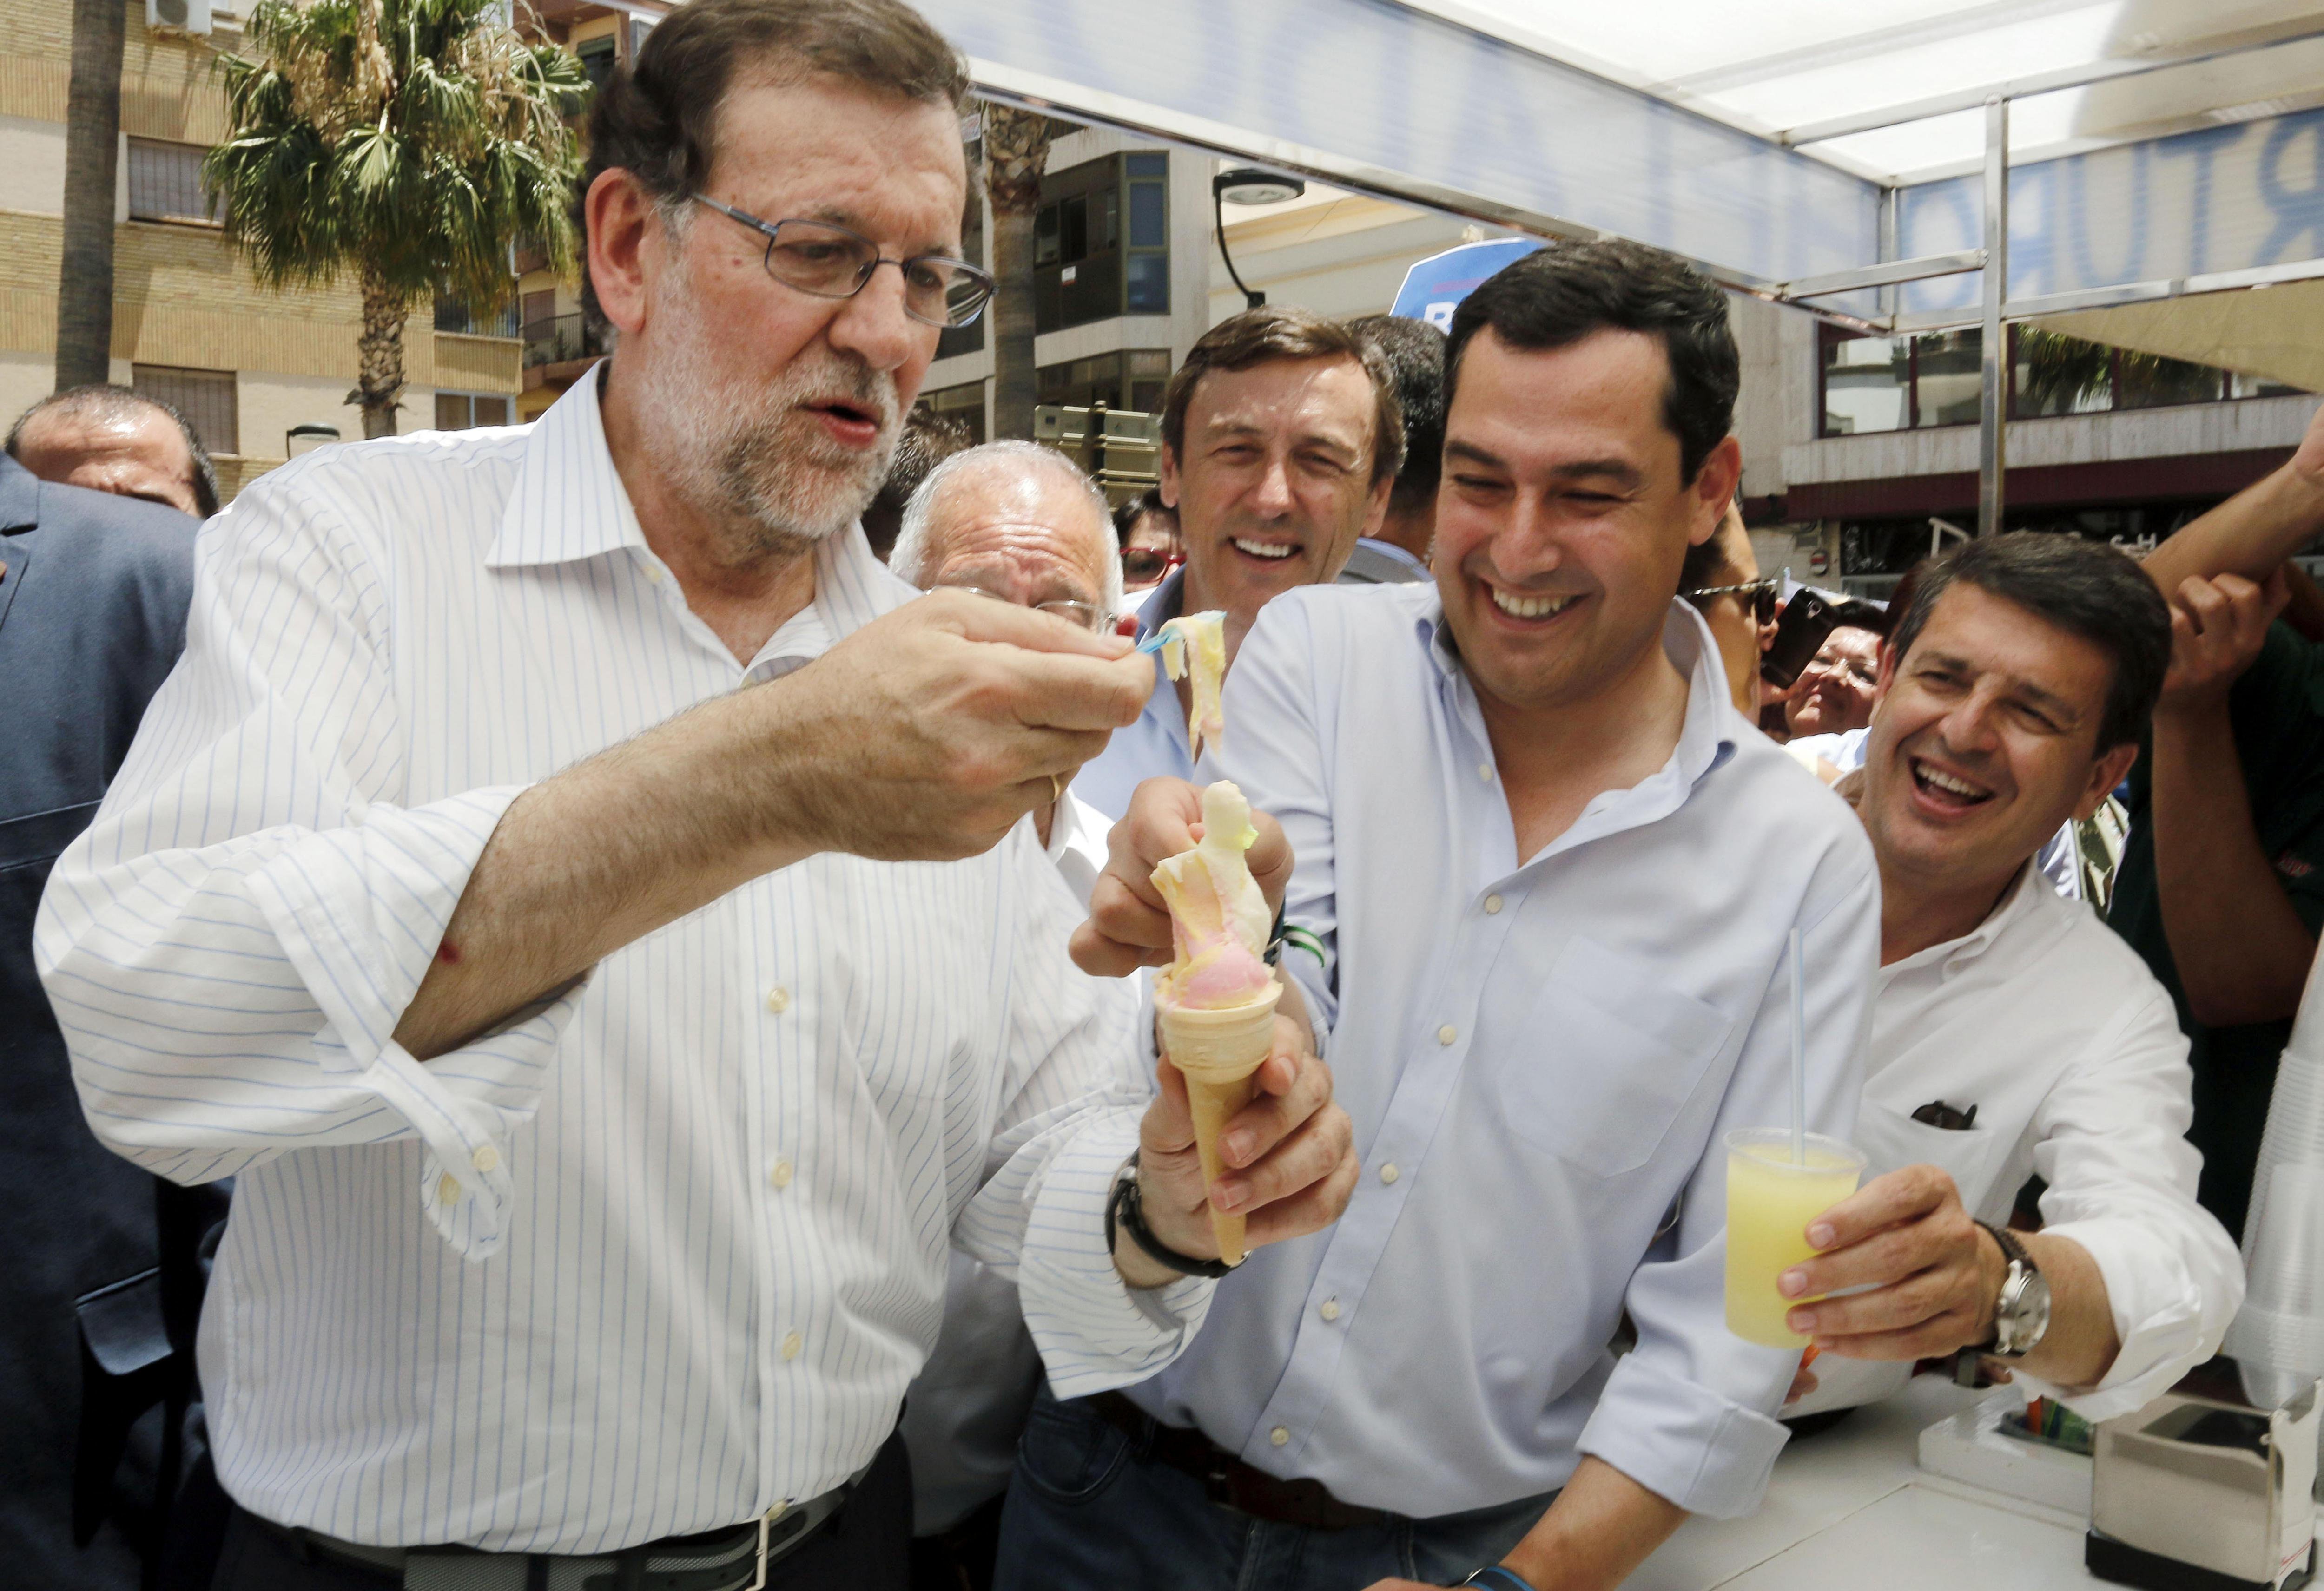 Alioli, pan con tomate, marisco y suflé: el menú diario de Rajoy en Santa Pola